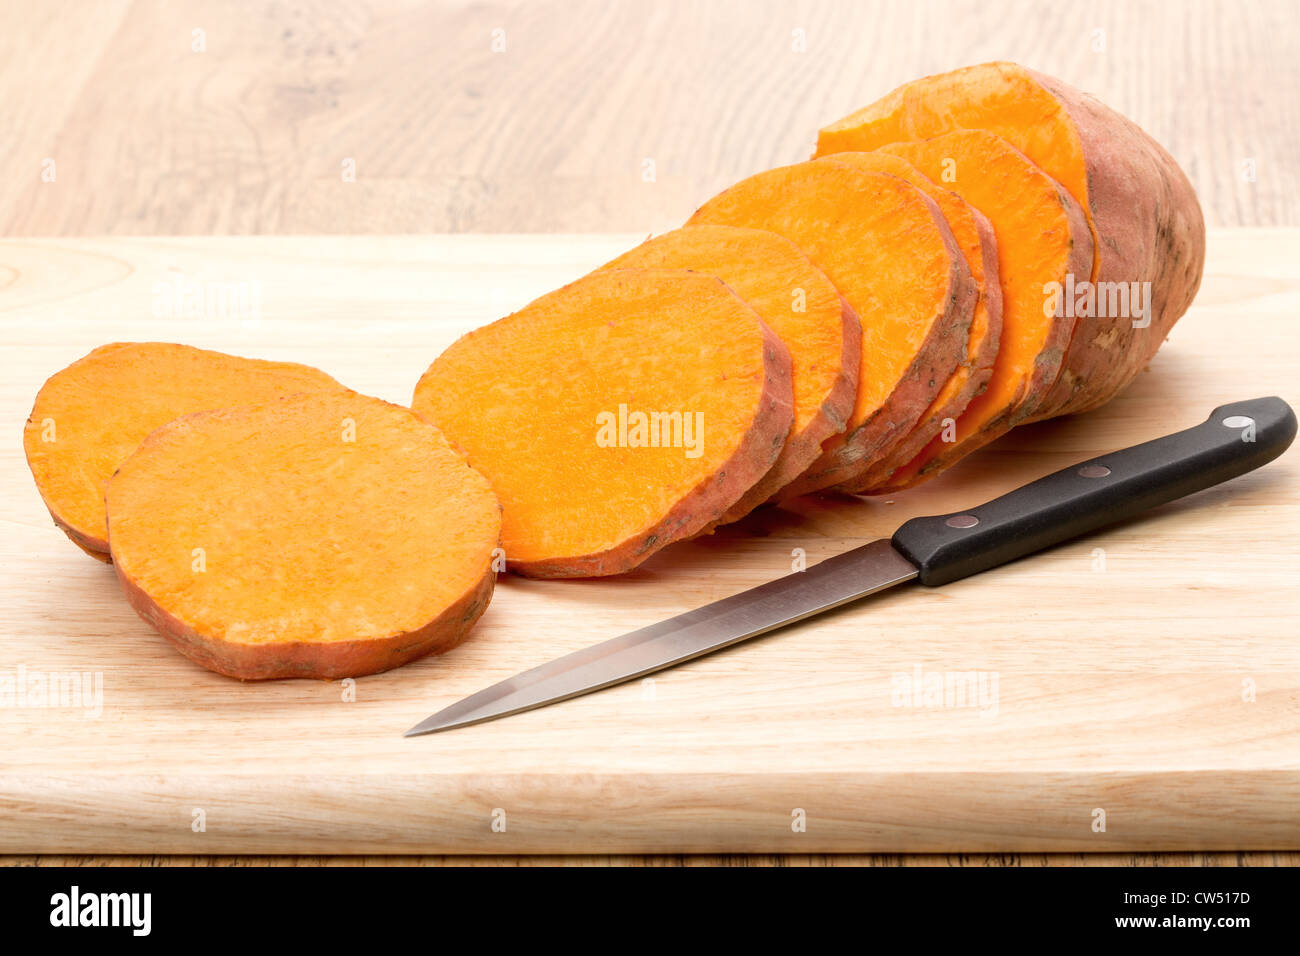 Tranches de patate douce - studio shot Banque D'Images